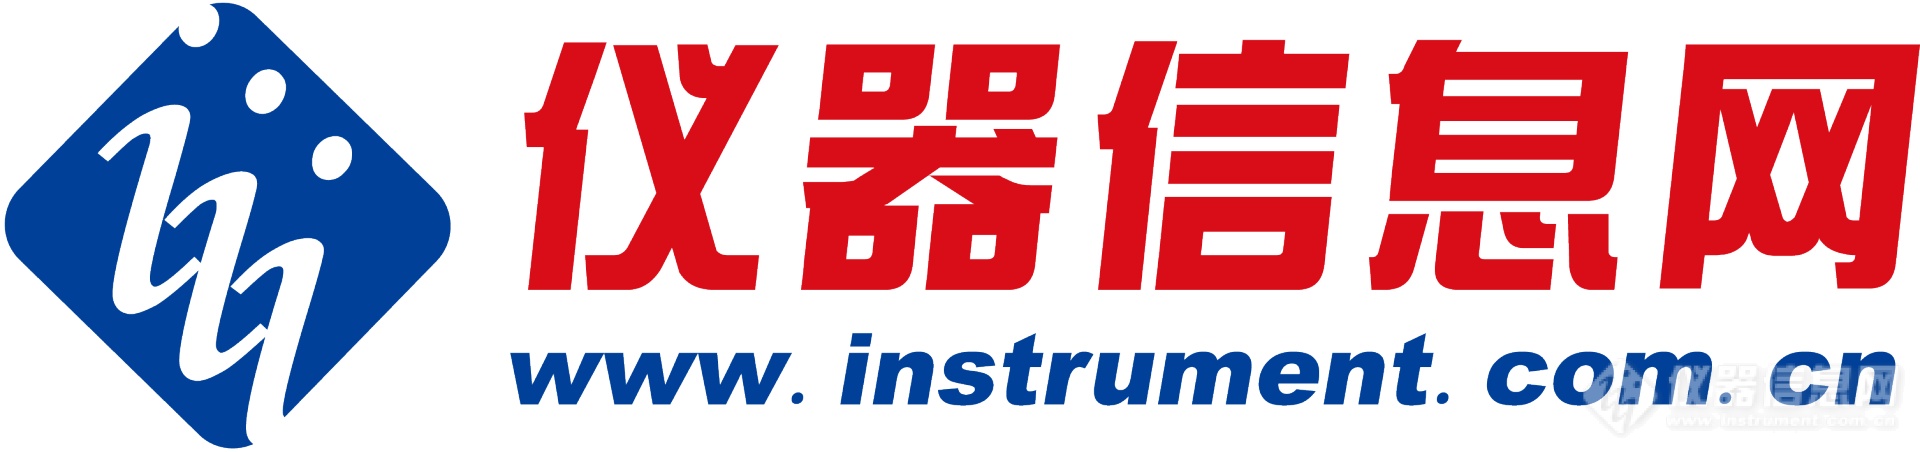 仪器信息网大logo(1).png